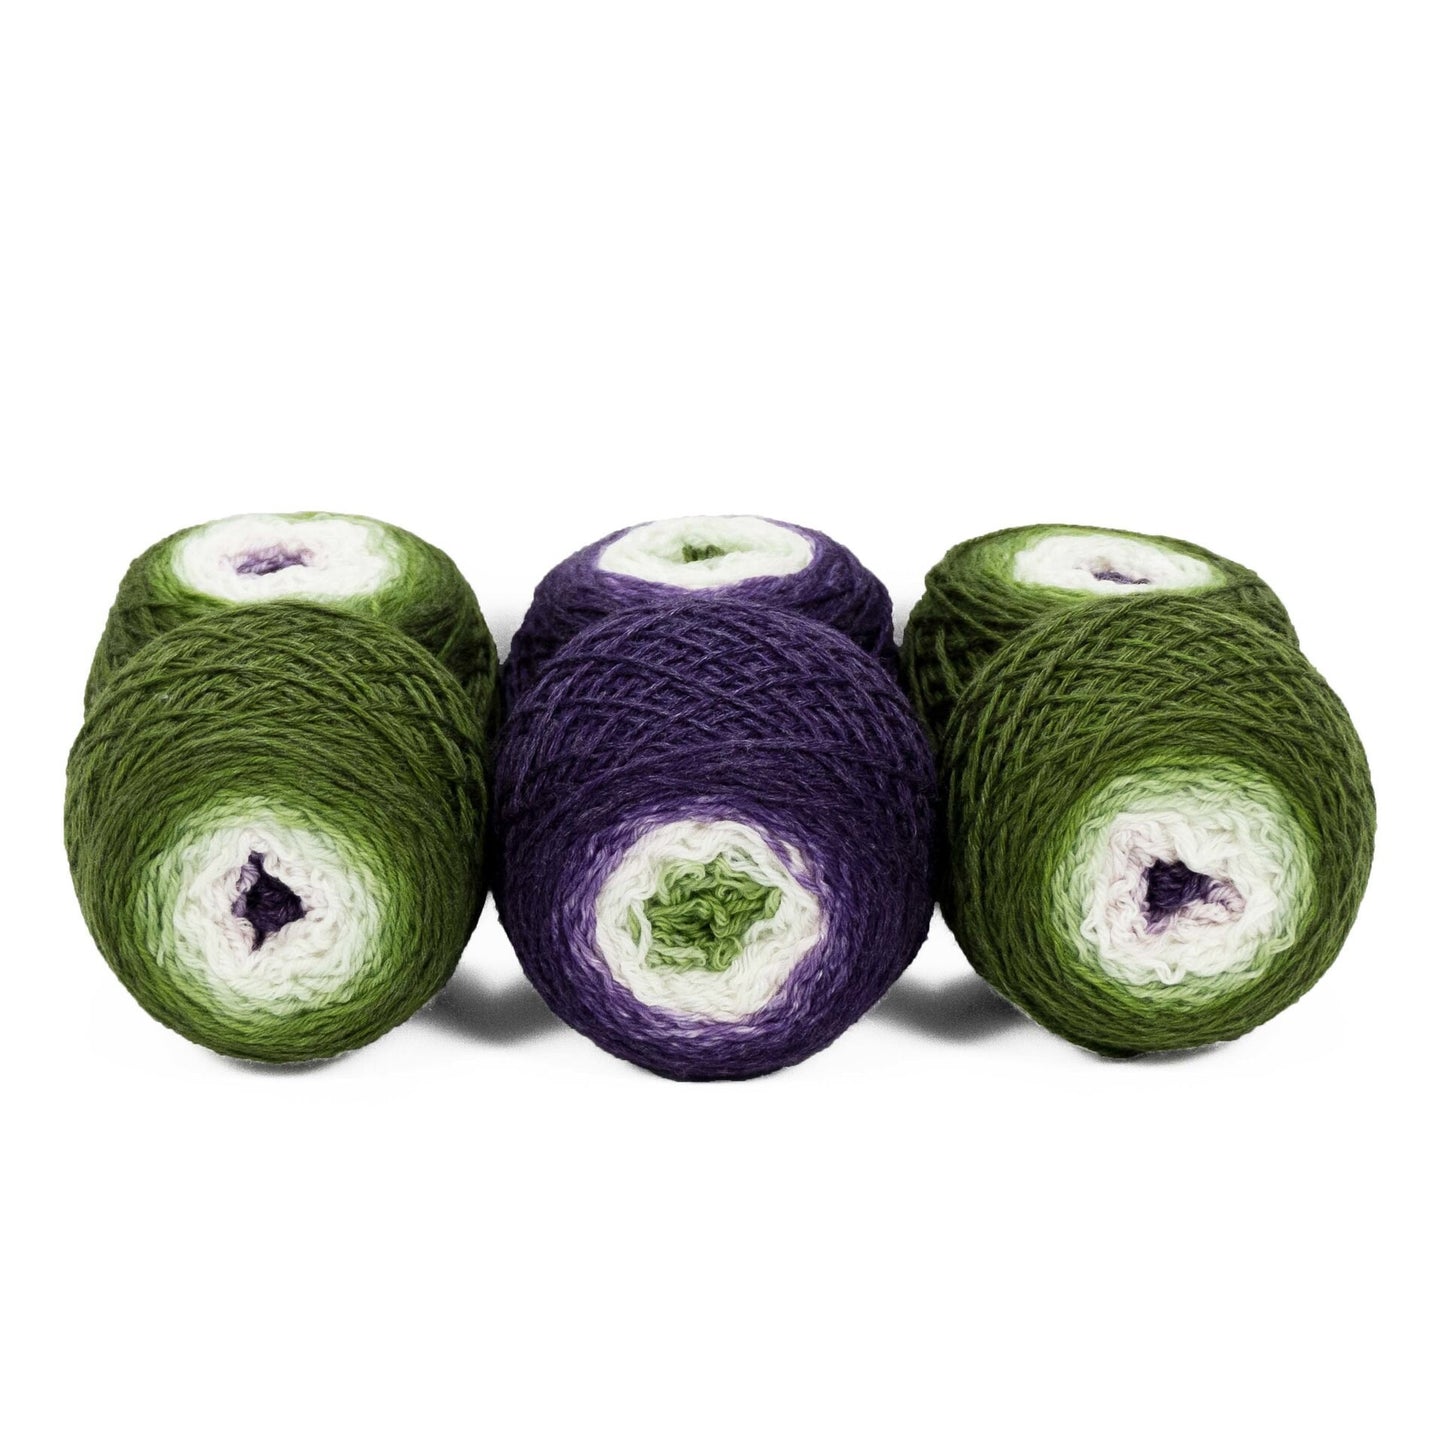 Sock Twins " Fruit Of The Vine " - Lleaf SW Merino/Bamboo Handpainted Gradient Sock Yarn Set